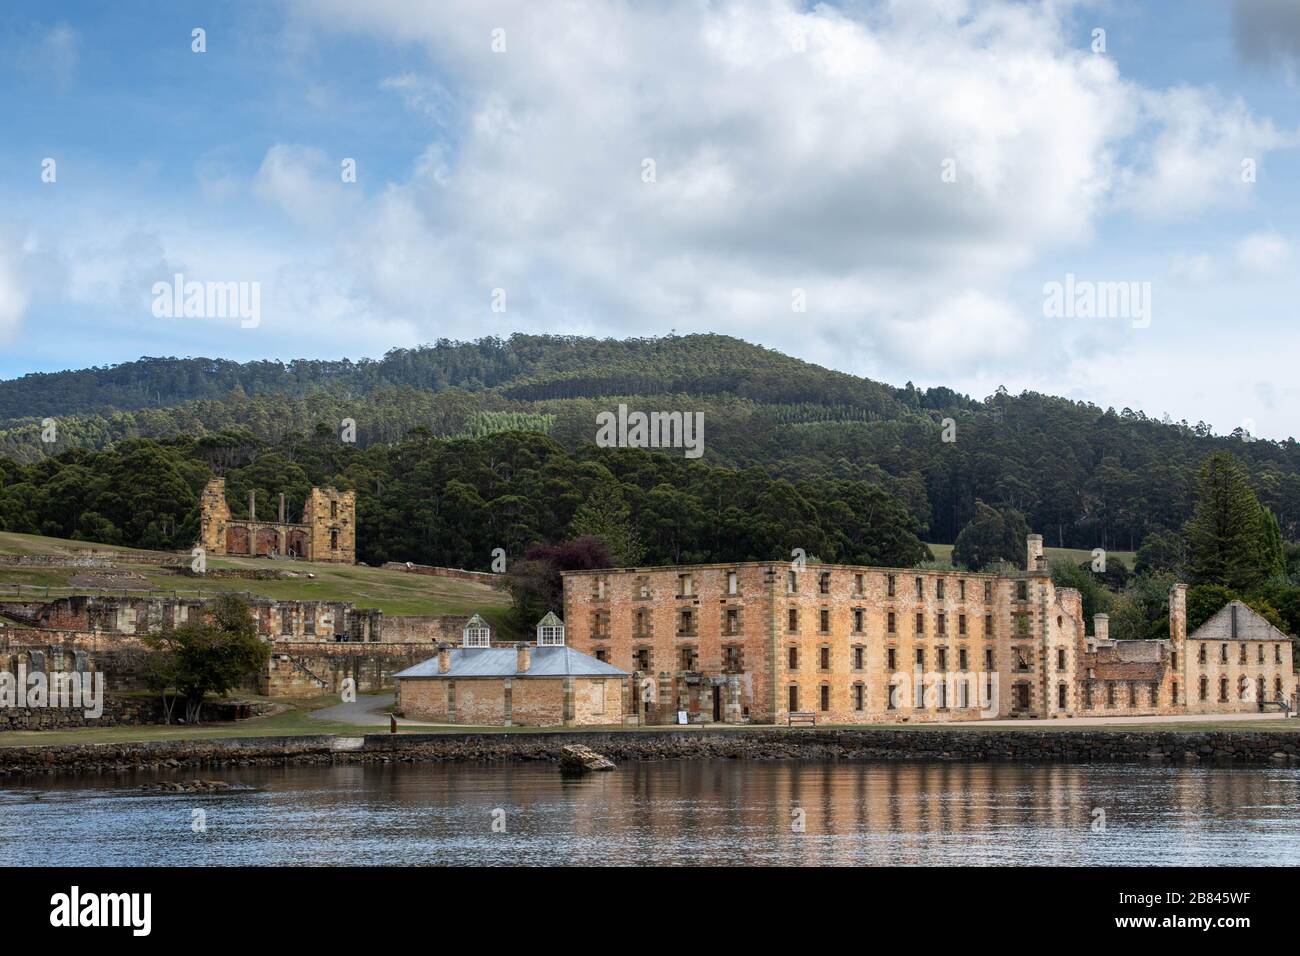 Altes britisches Gefängnis in Tasmanien Australien Stockfoto